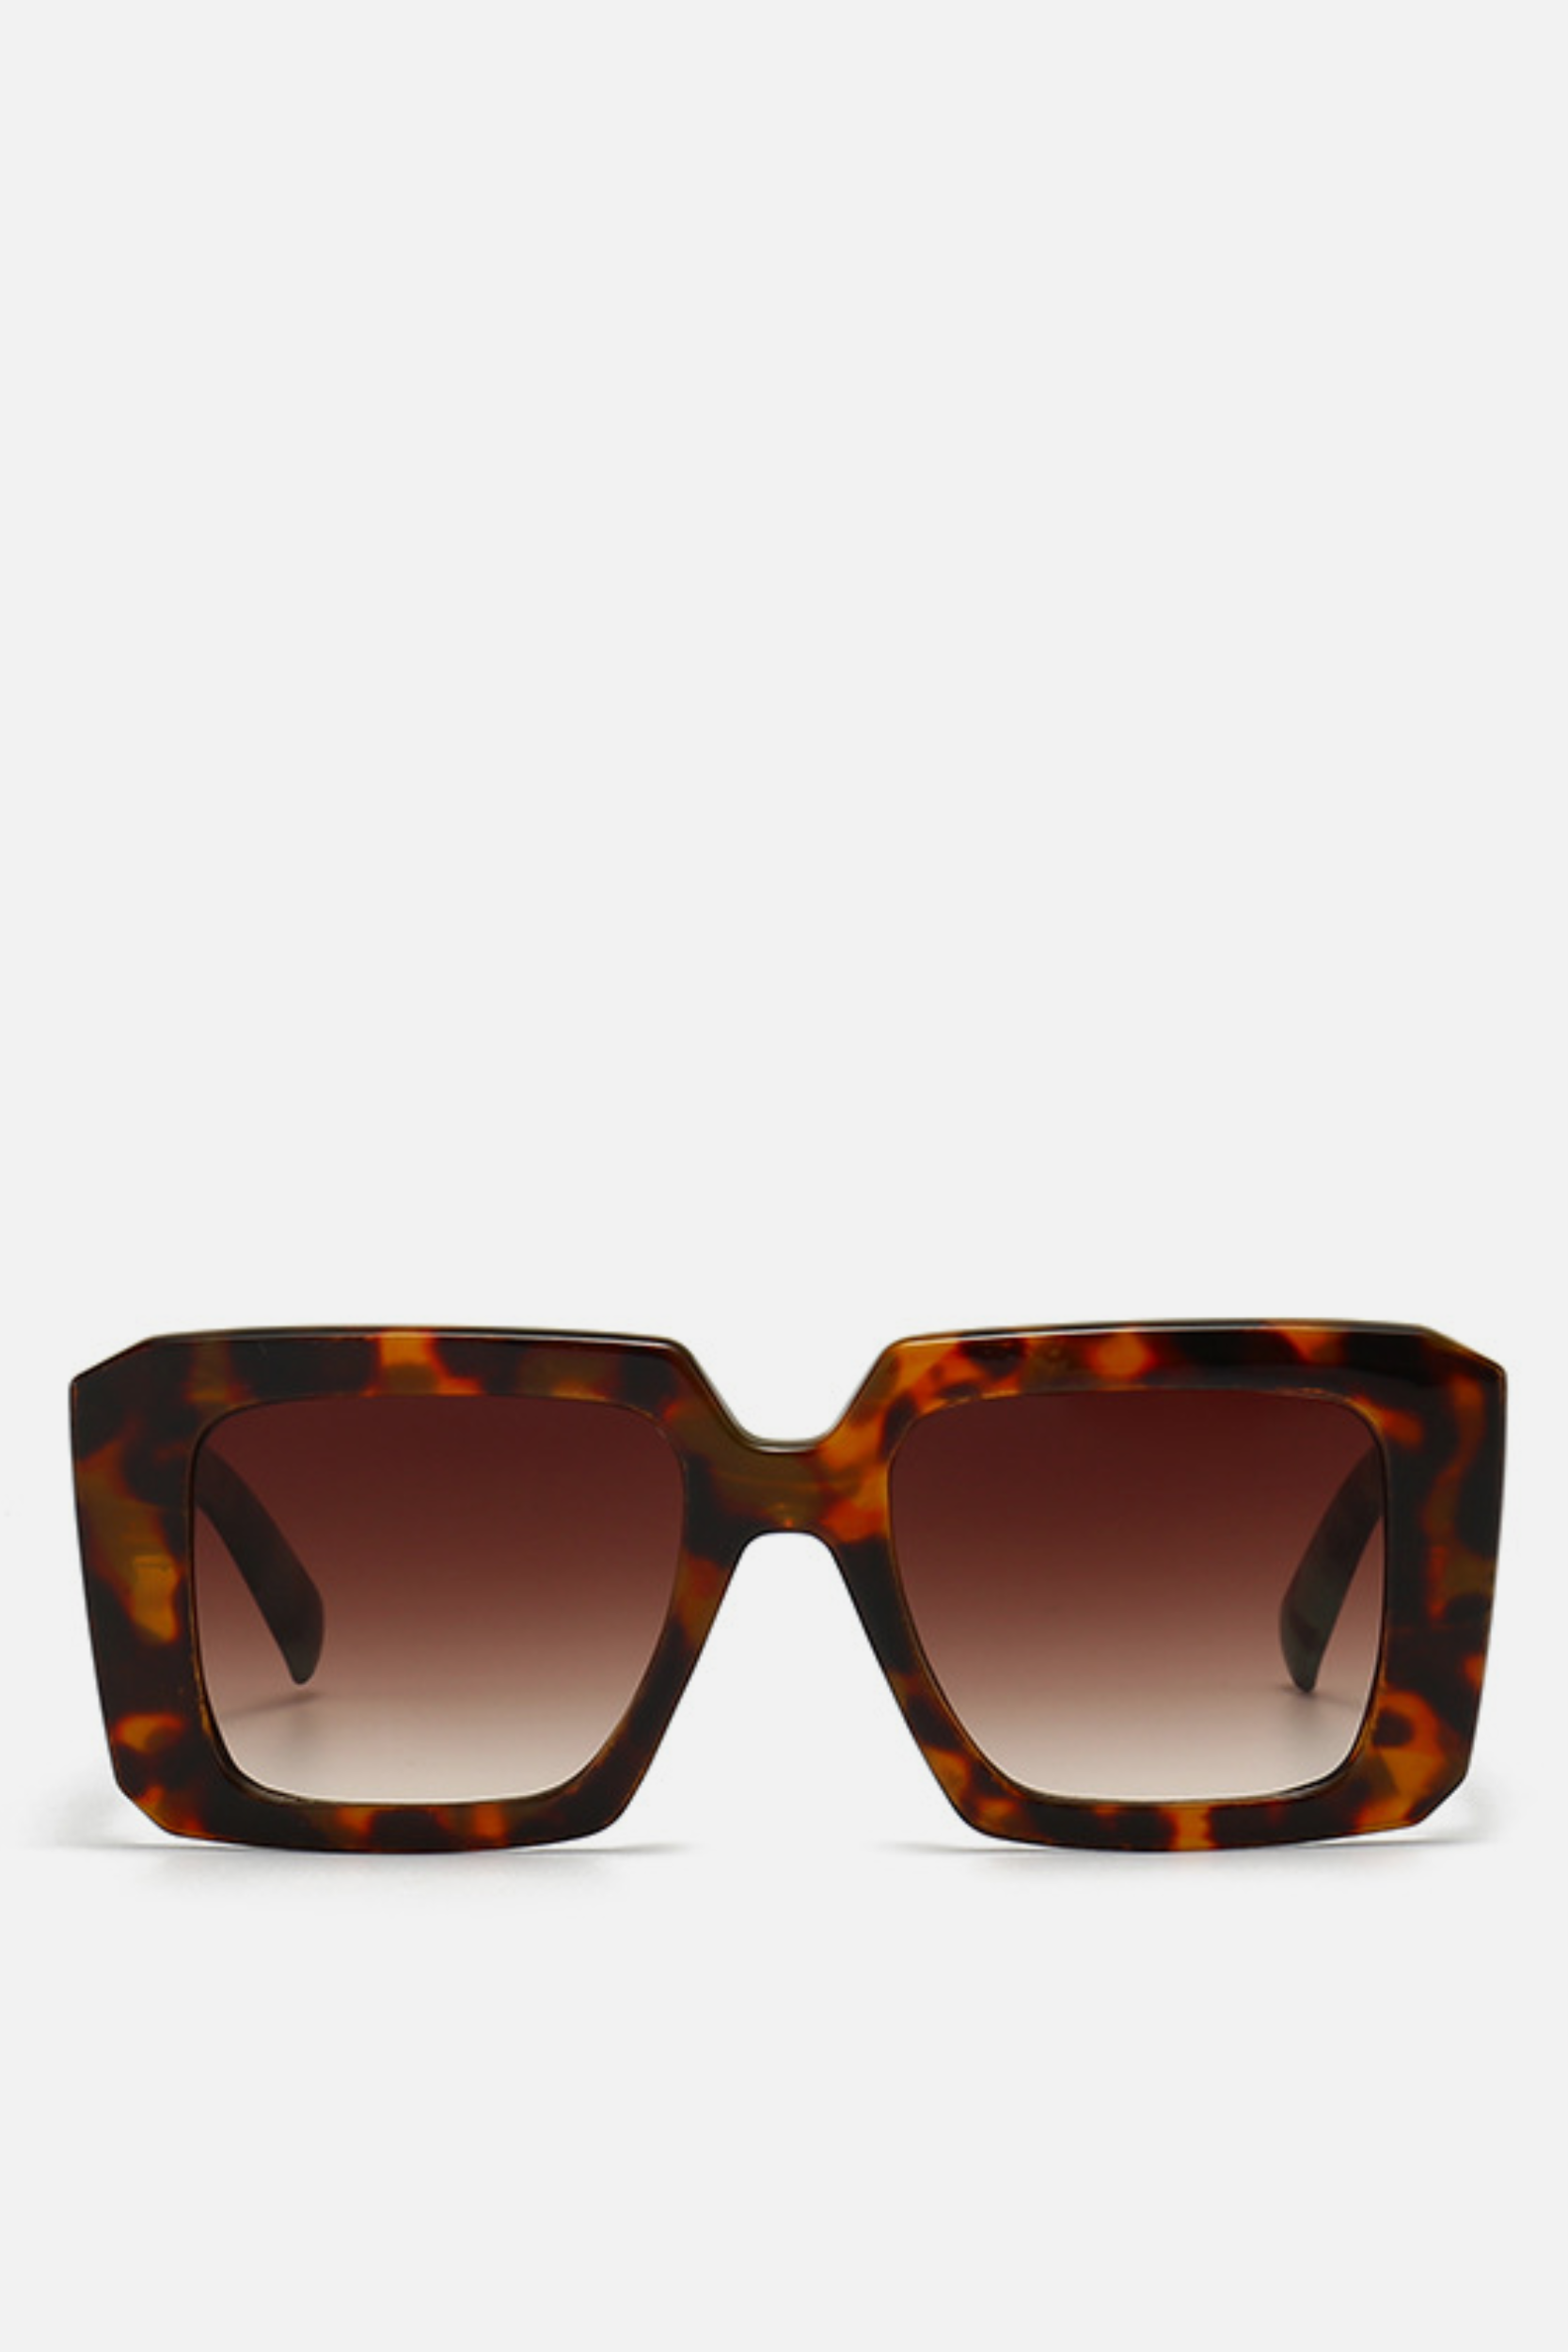 PERU Leopard Square Sunglasses